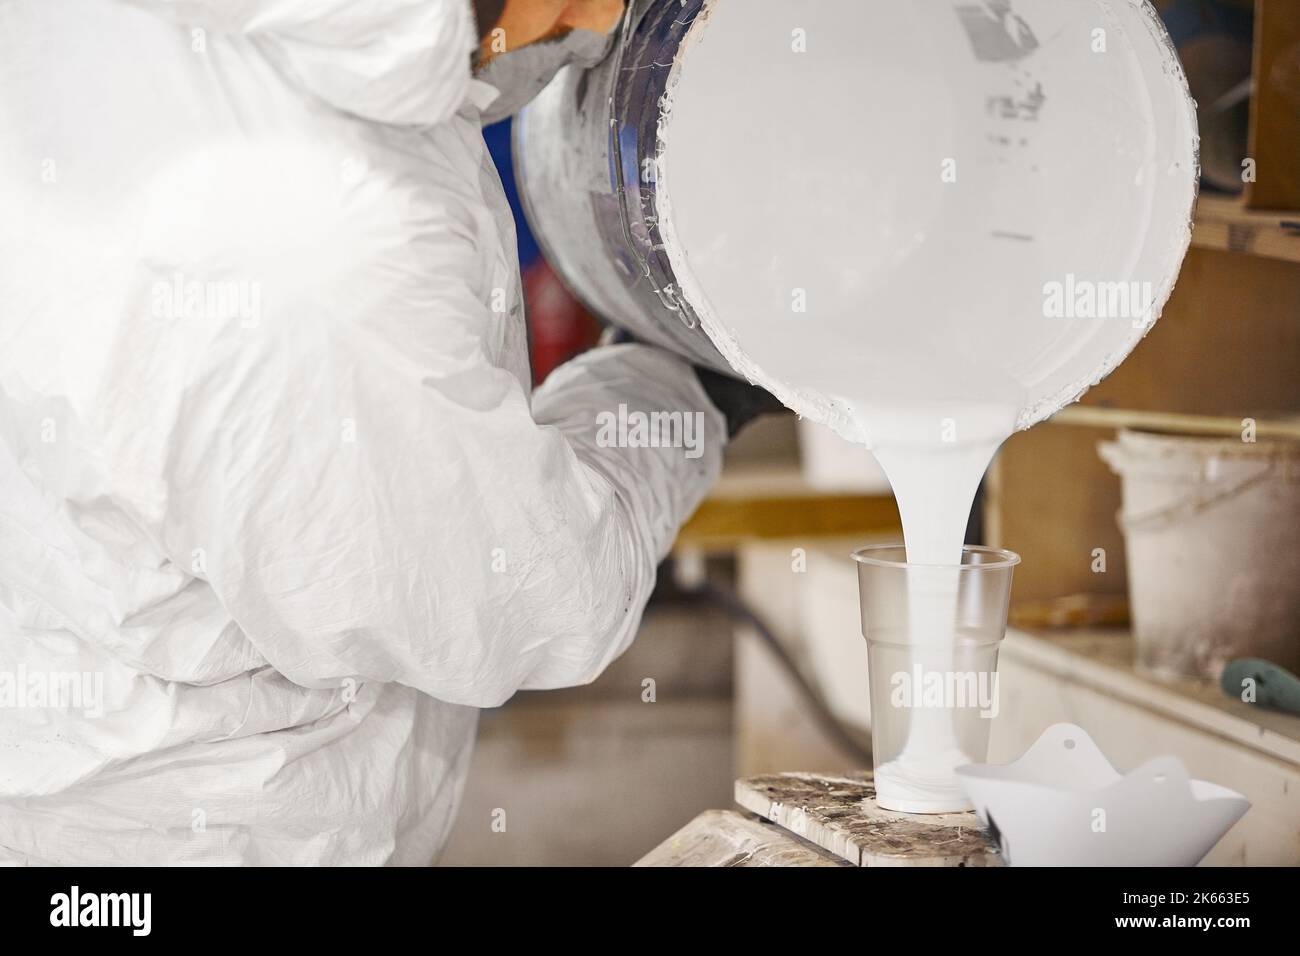 Der Mann gießt dosierte Menge Farbe in einen Plastikbecher. Stockfoto